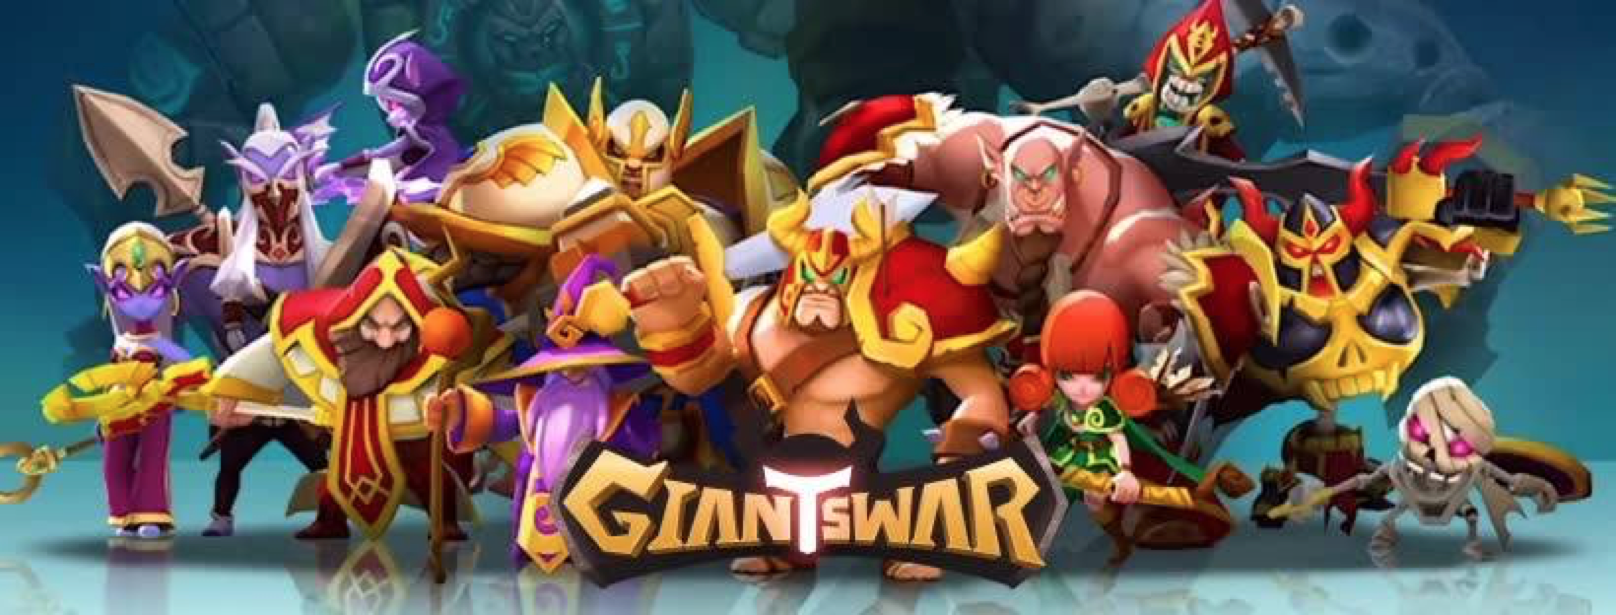 Giant's War・Tesztlabor